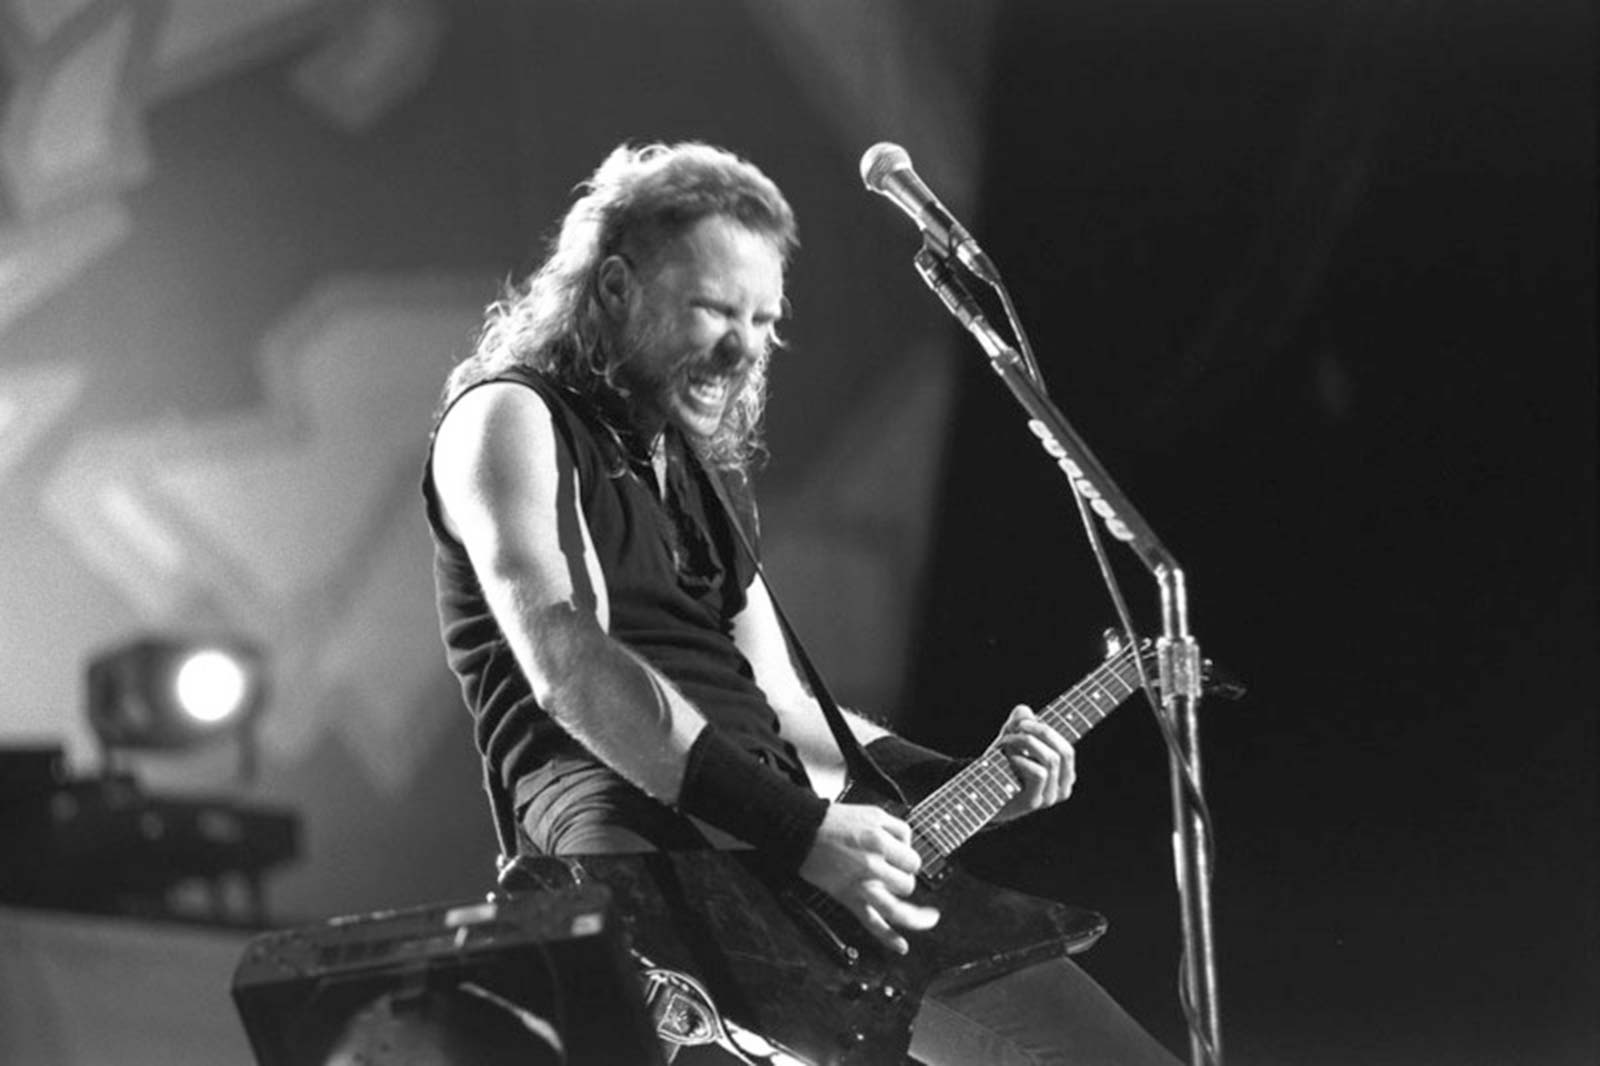 James Hetfield of Metallica live in 1993.